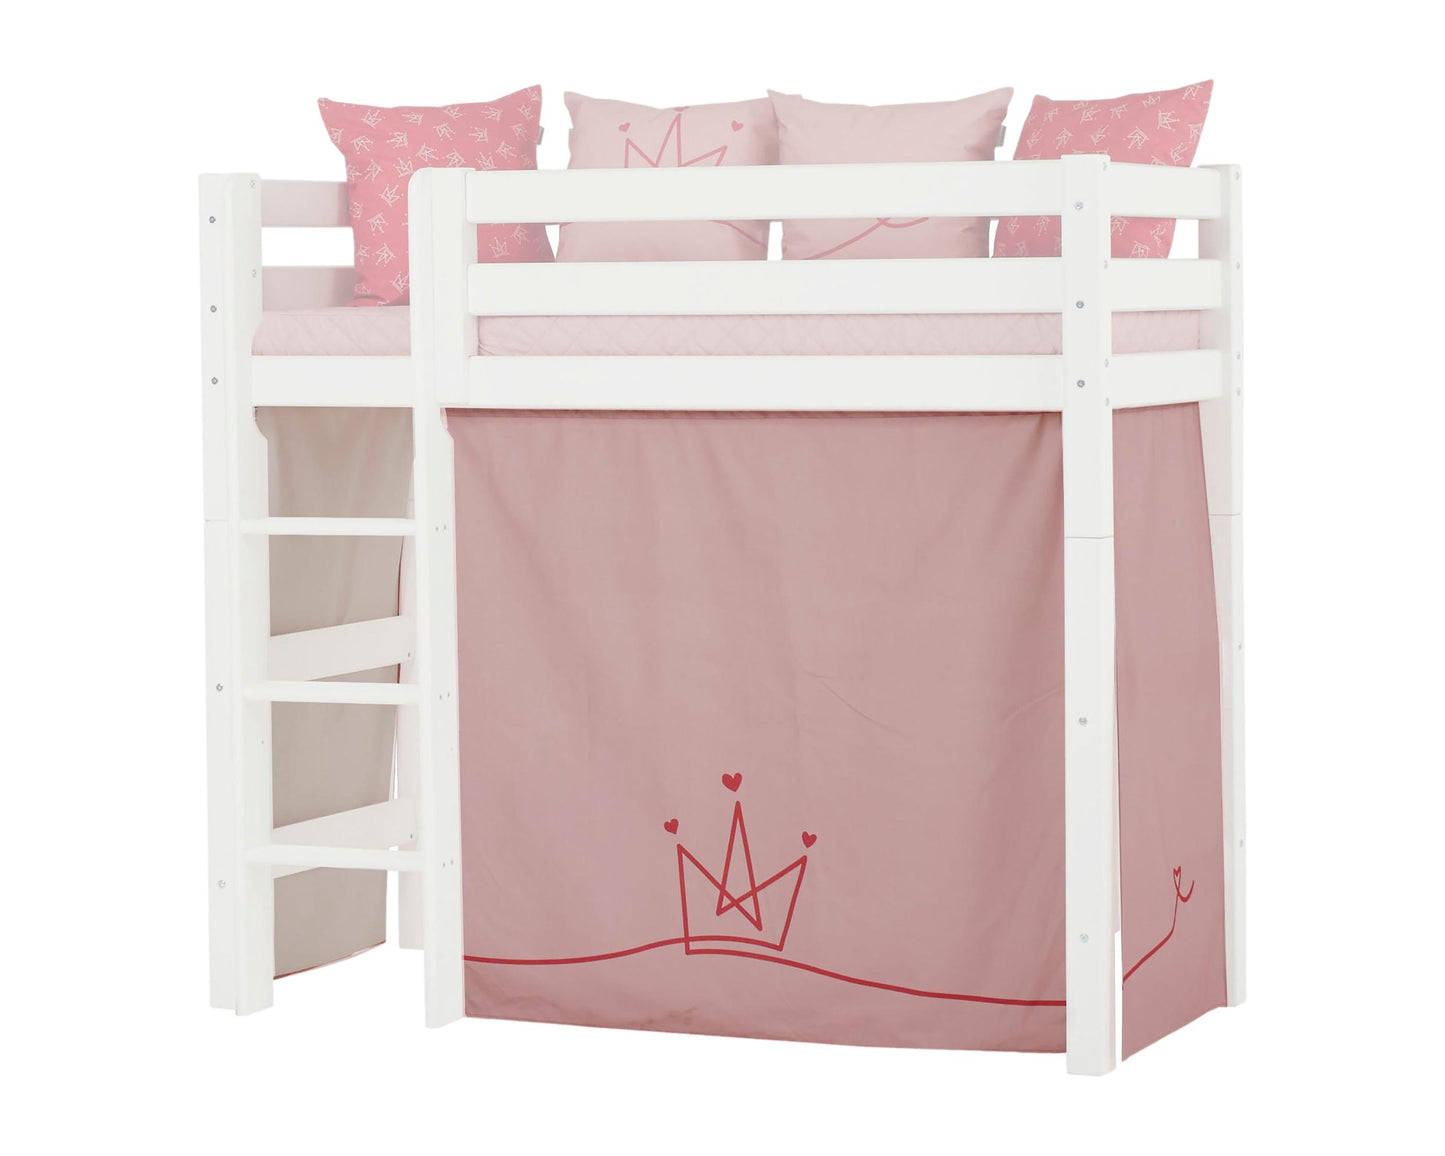 Принцесса - Занавес для средней кровати - 70x160 см